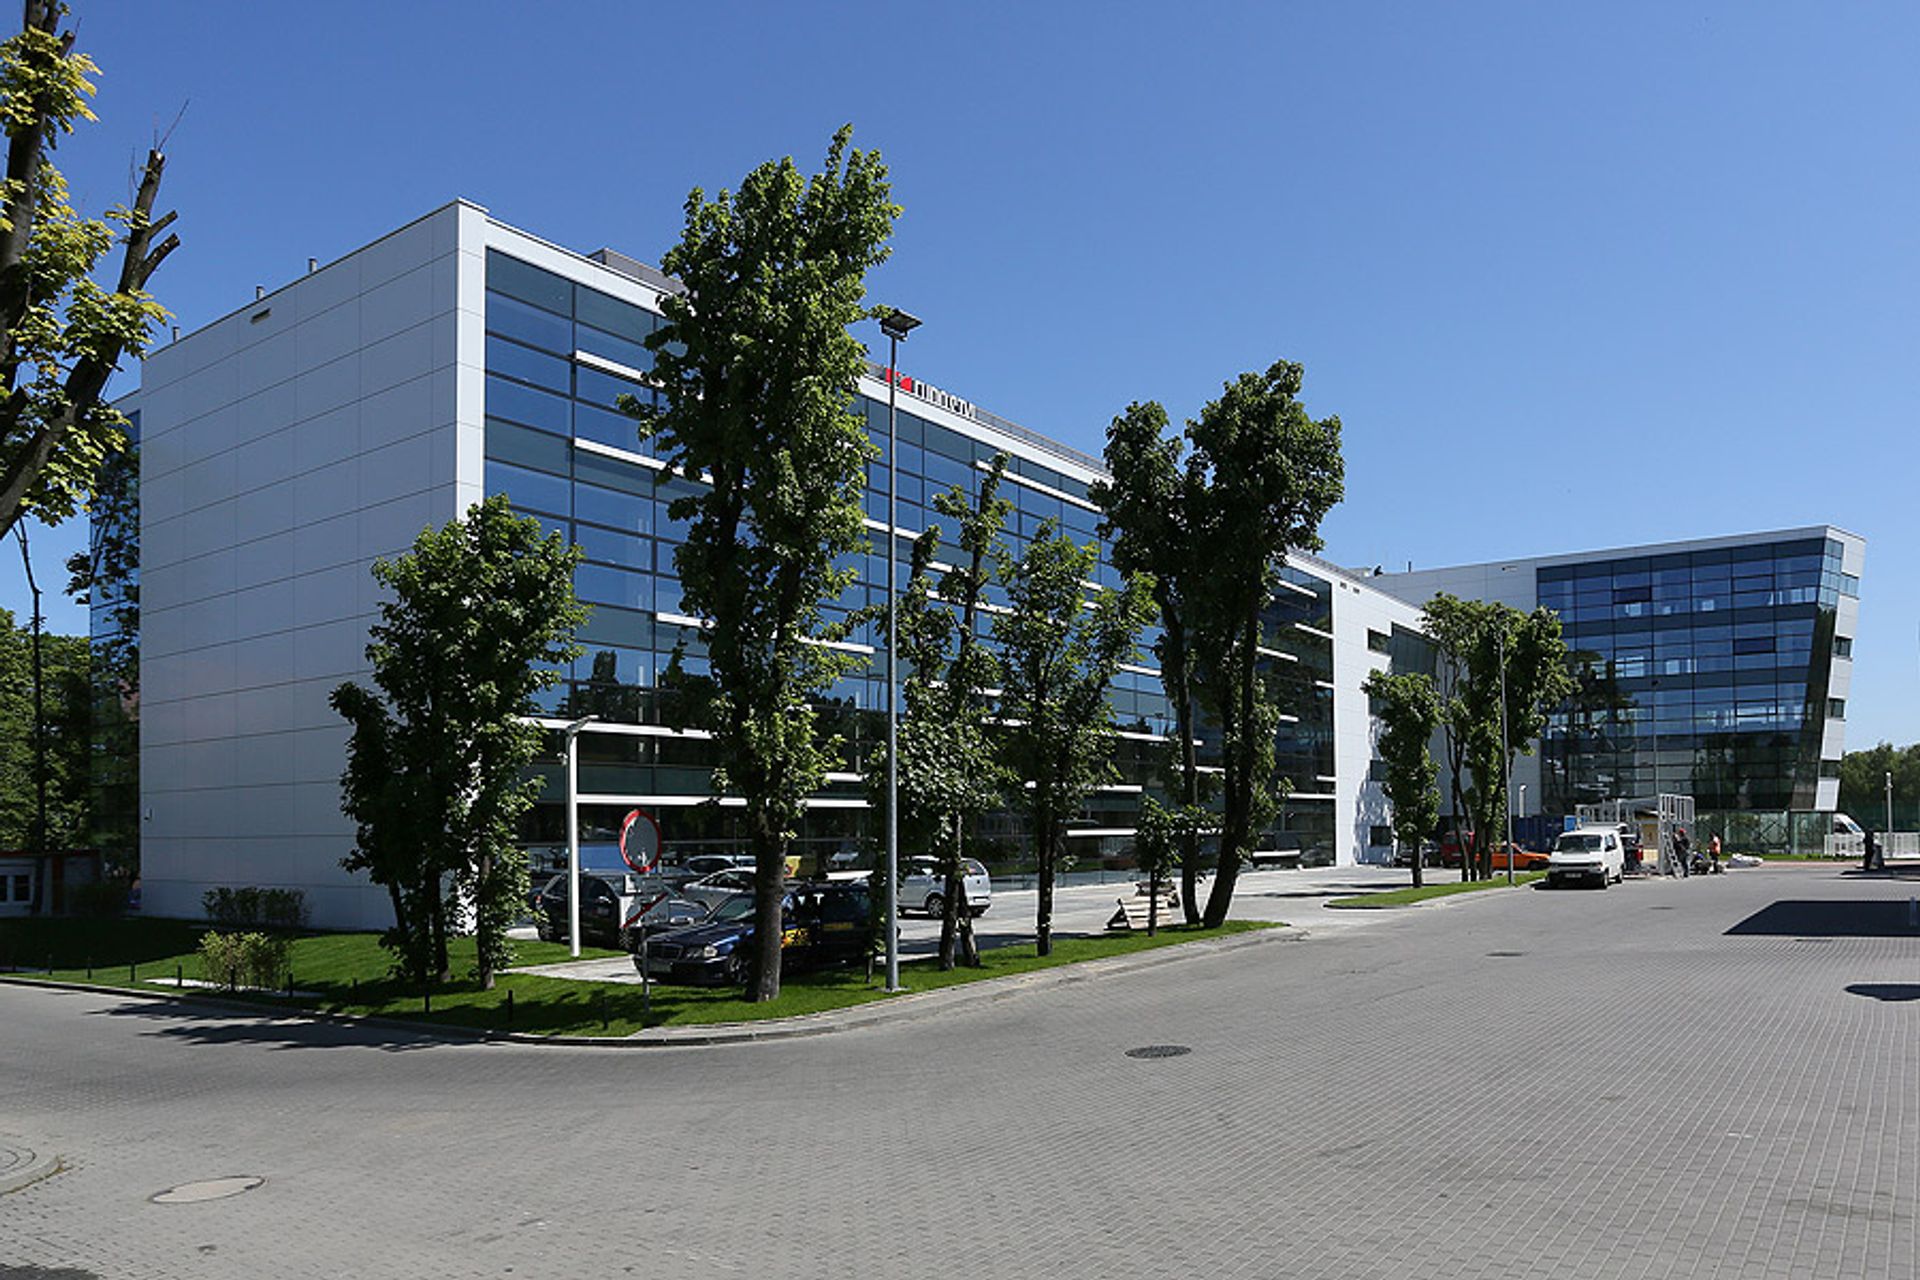  Metsä Group wybiera Gdańsk. Finowie stworzą w trójmiejskim OPERA Office centrum usług wspólnych